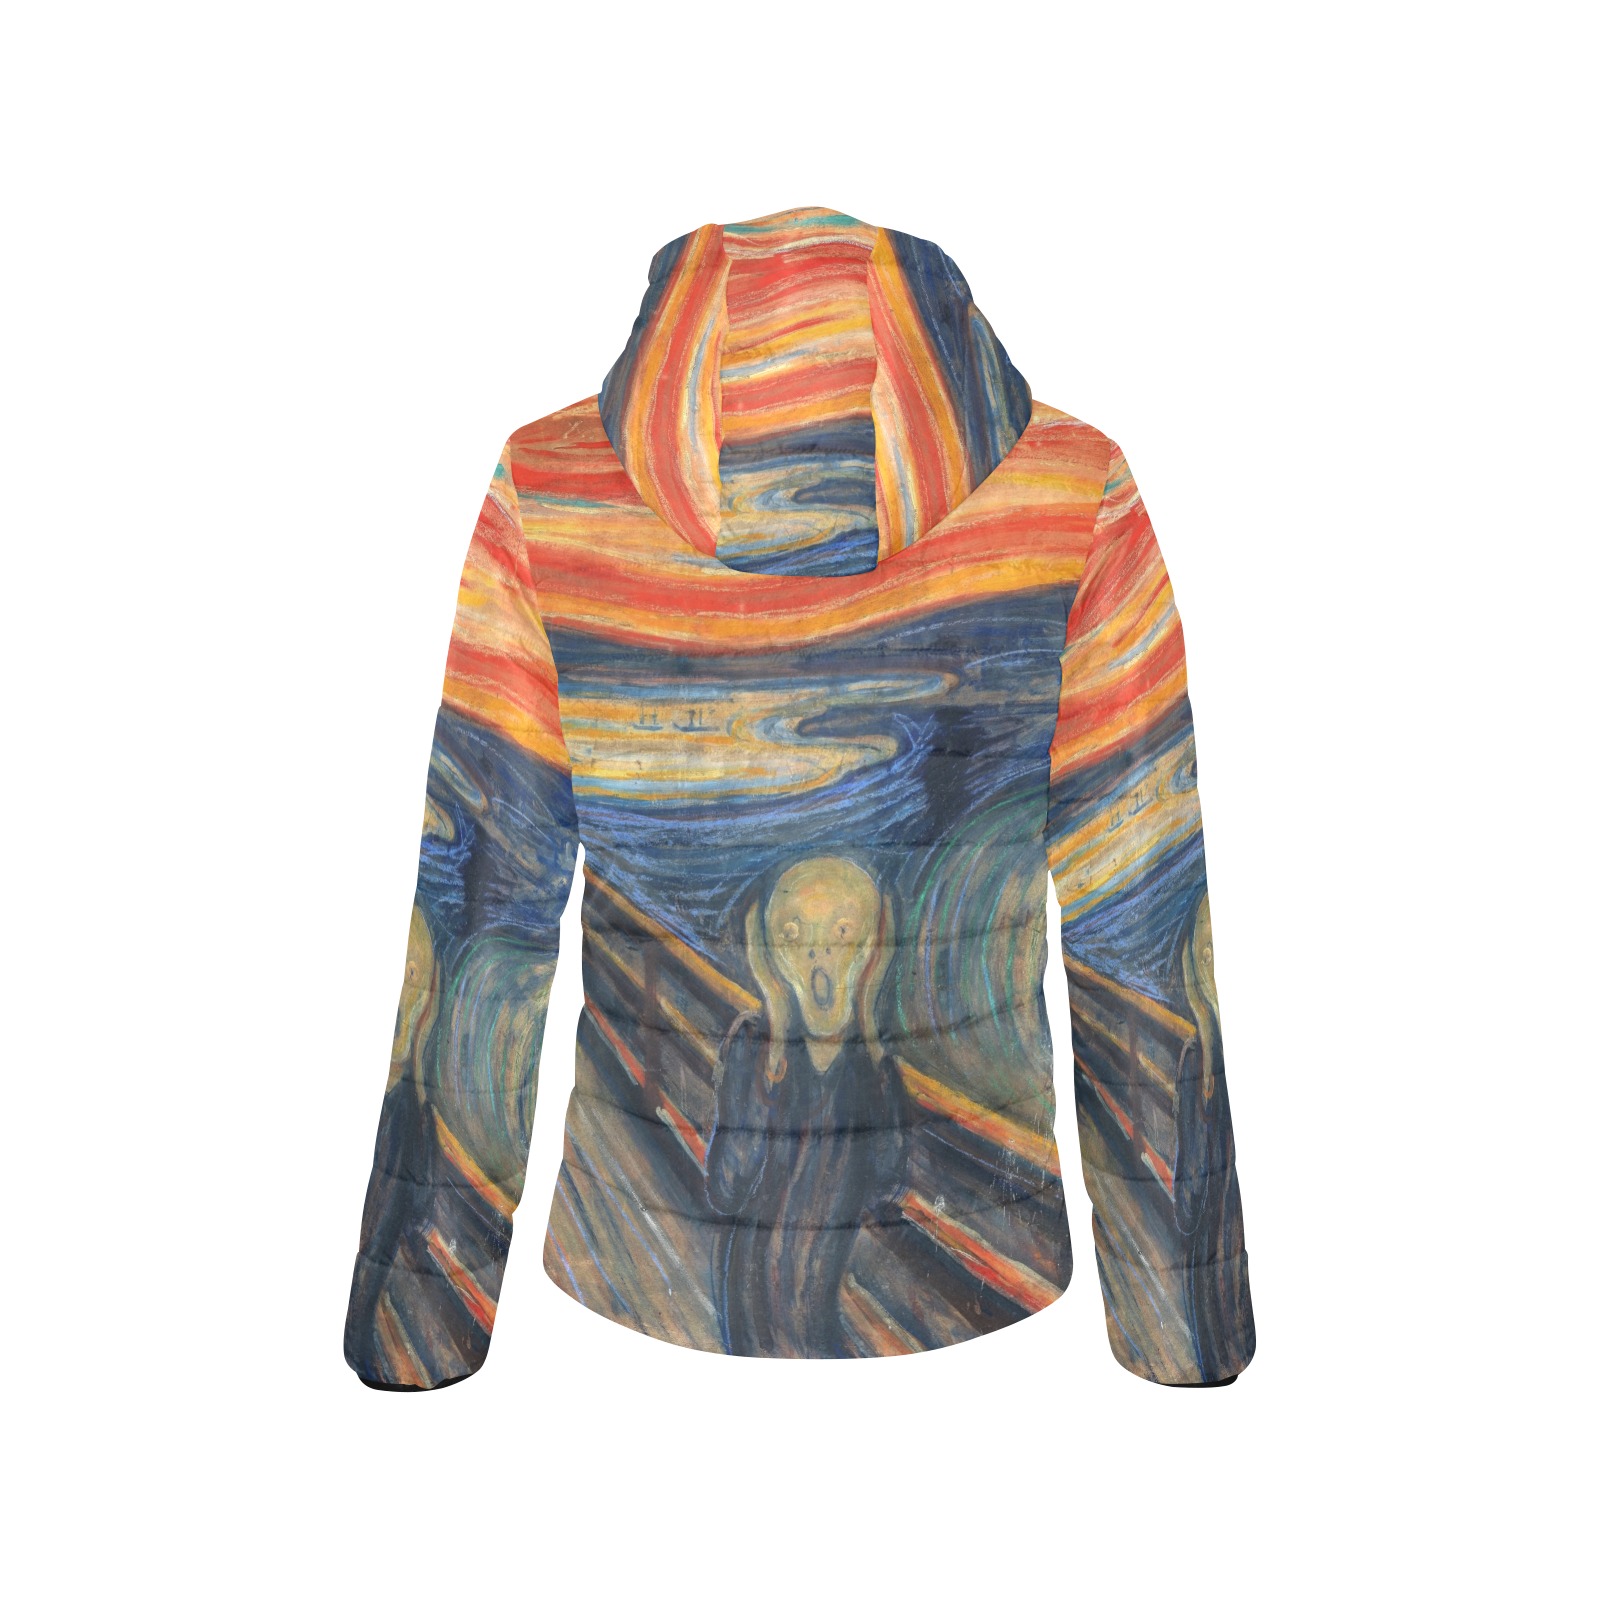 Edvard Munch-The scream Women's Padded Hooded Jacket (Model H46)